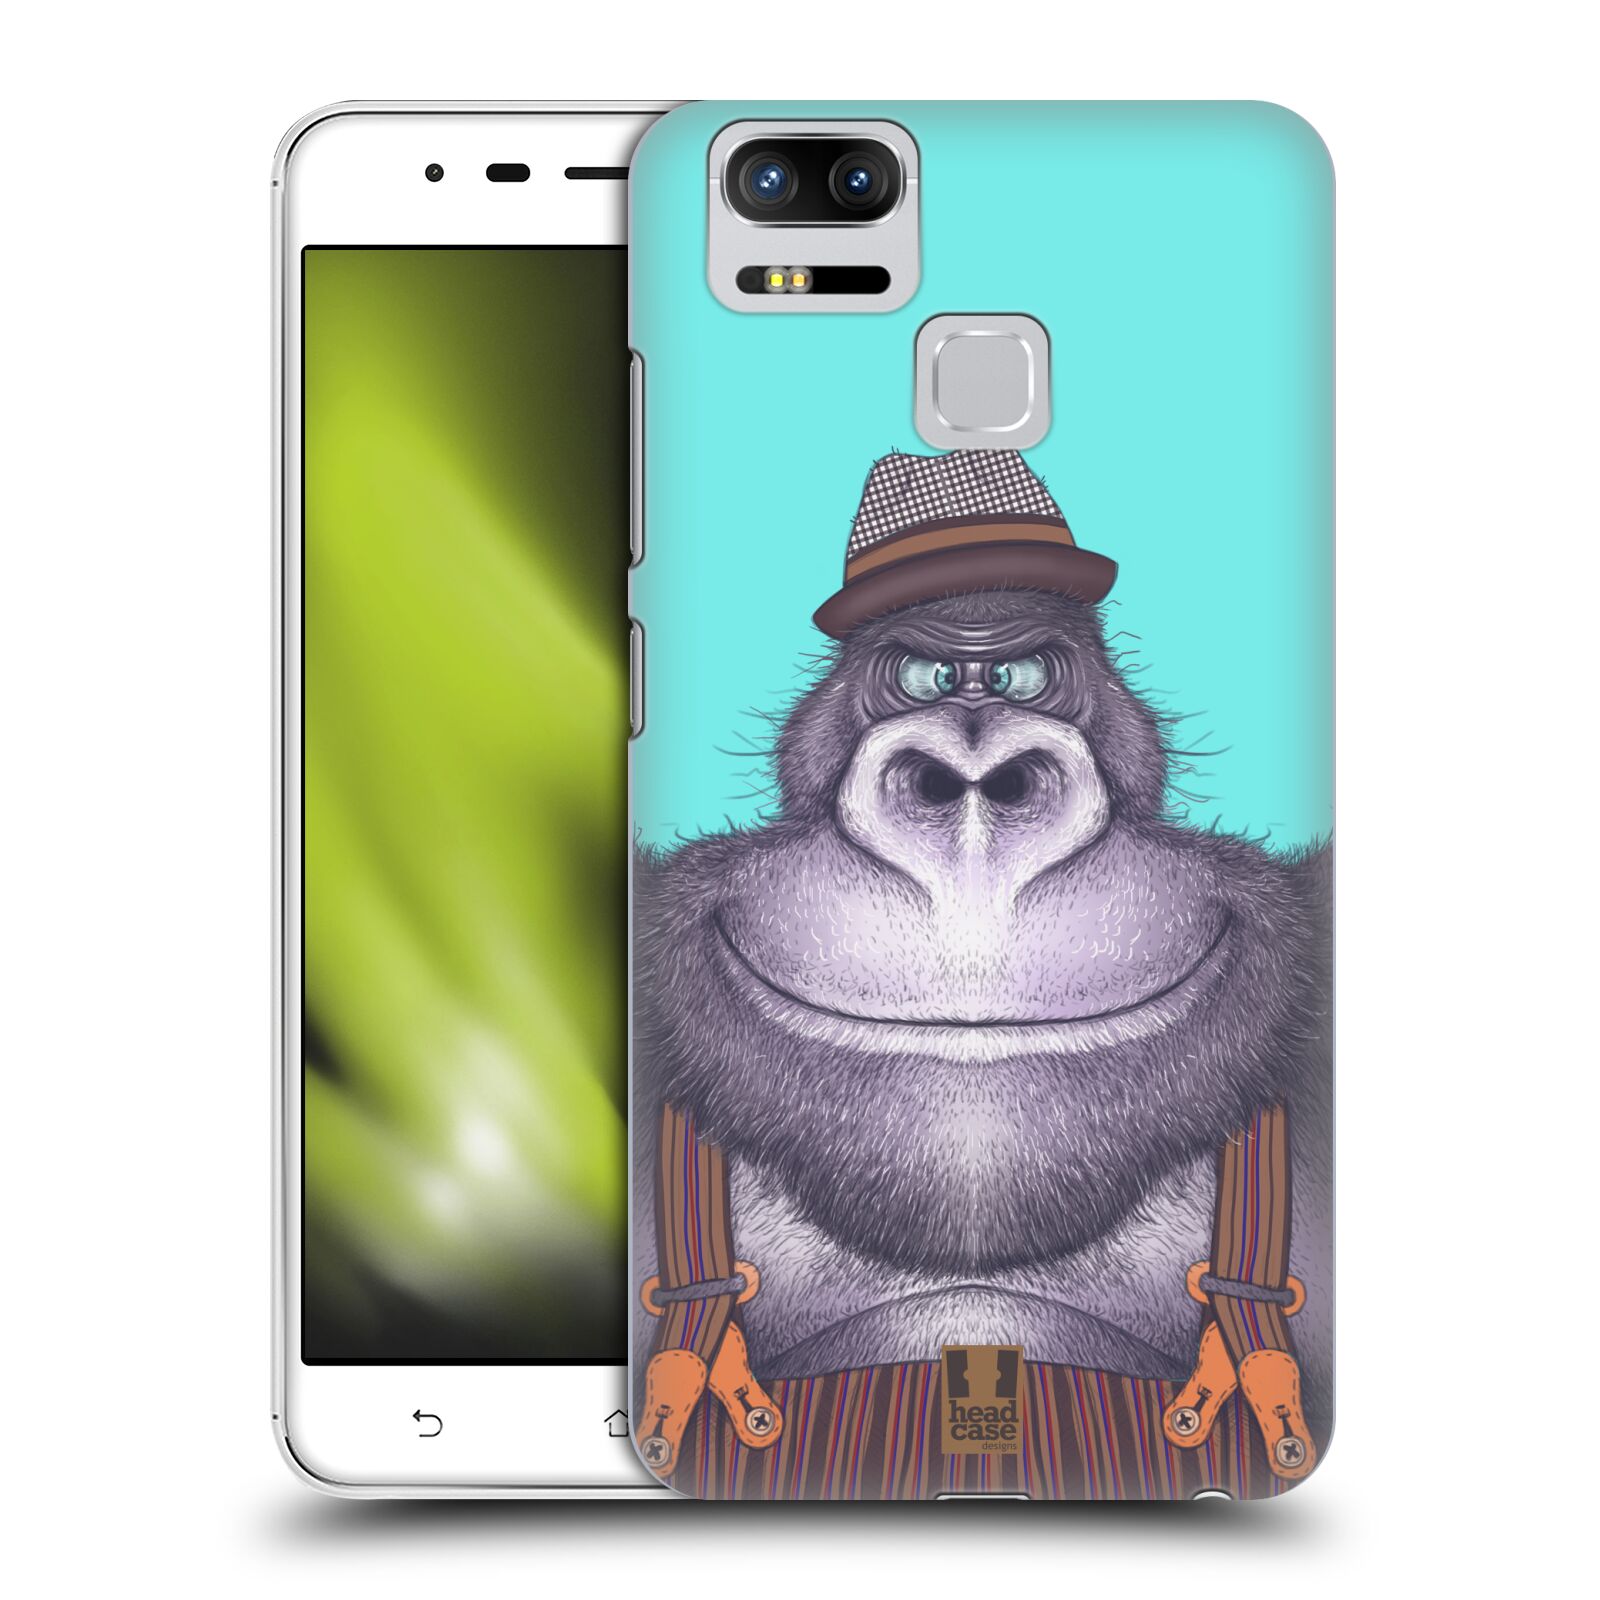 HEAD CASE plastový obal na mobil Asus Zenfone 3 Zoom ZE553KL vzor Kreslená zvířátka gorila